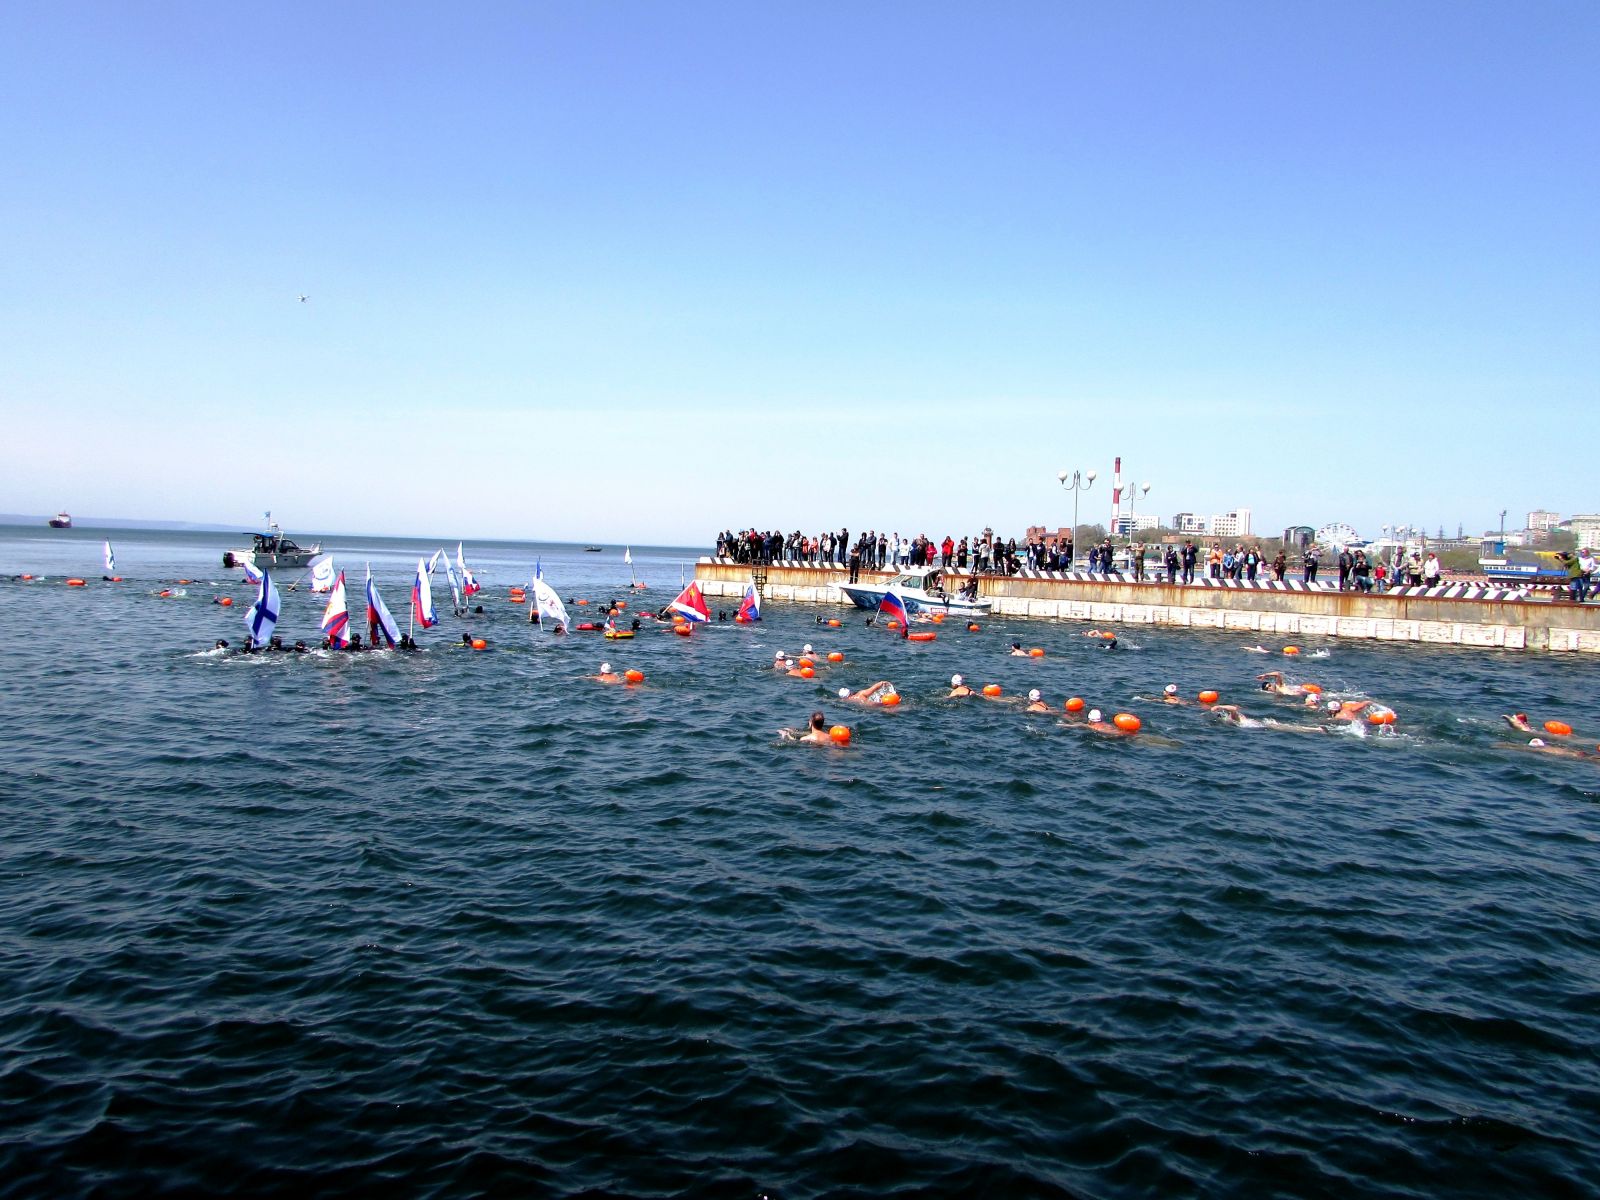 Дистанцию разметили буйками, чтобы спортсмены могли ориентироваться на воде. Фото: Любовь ХМЕЛЕВСКАЯ